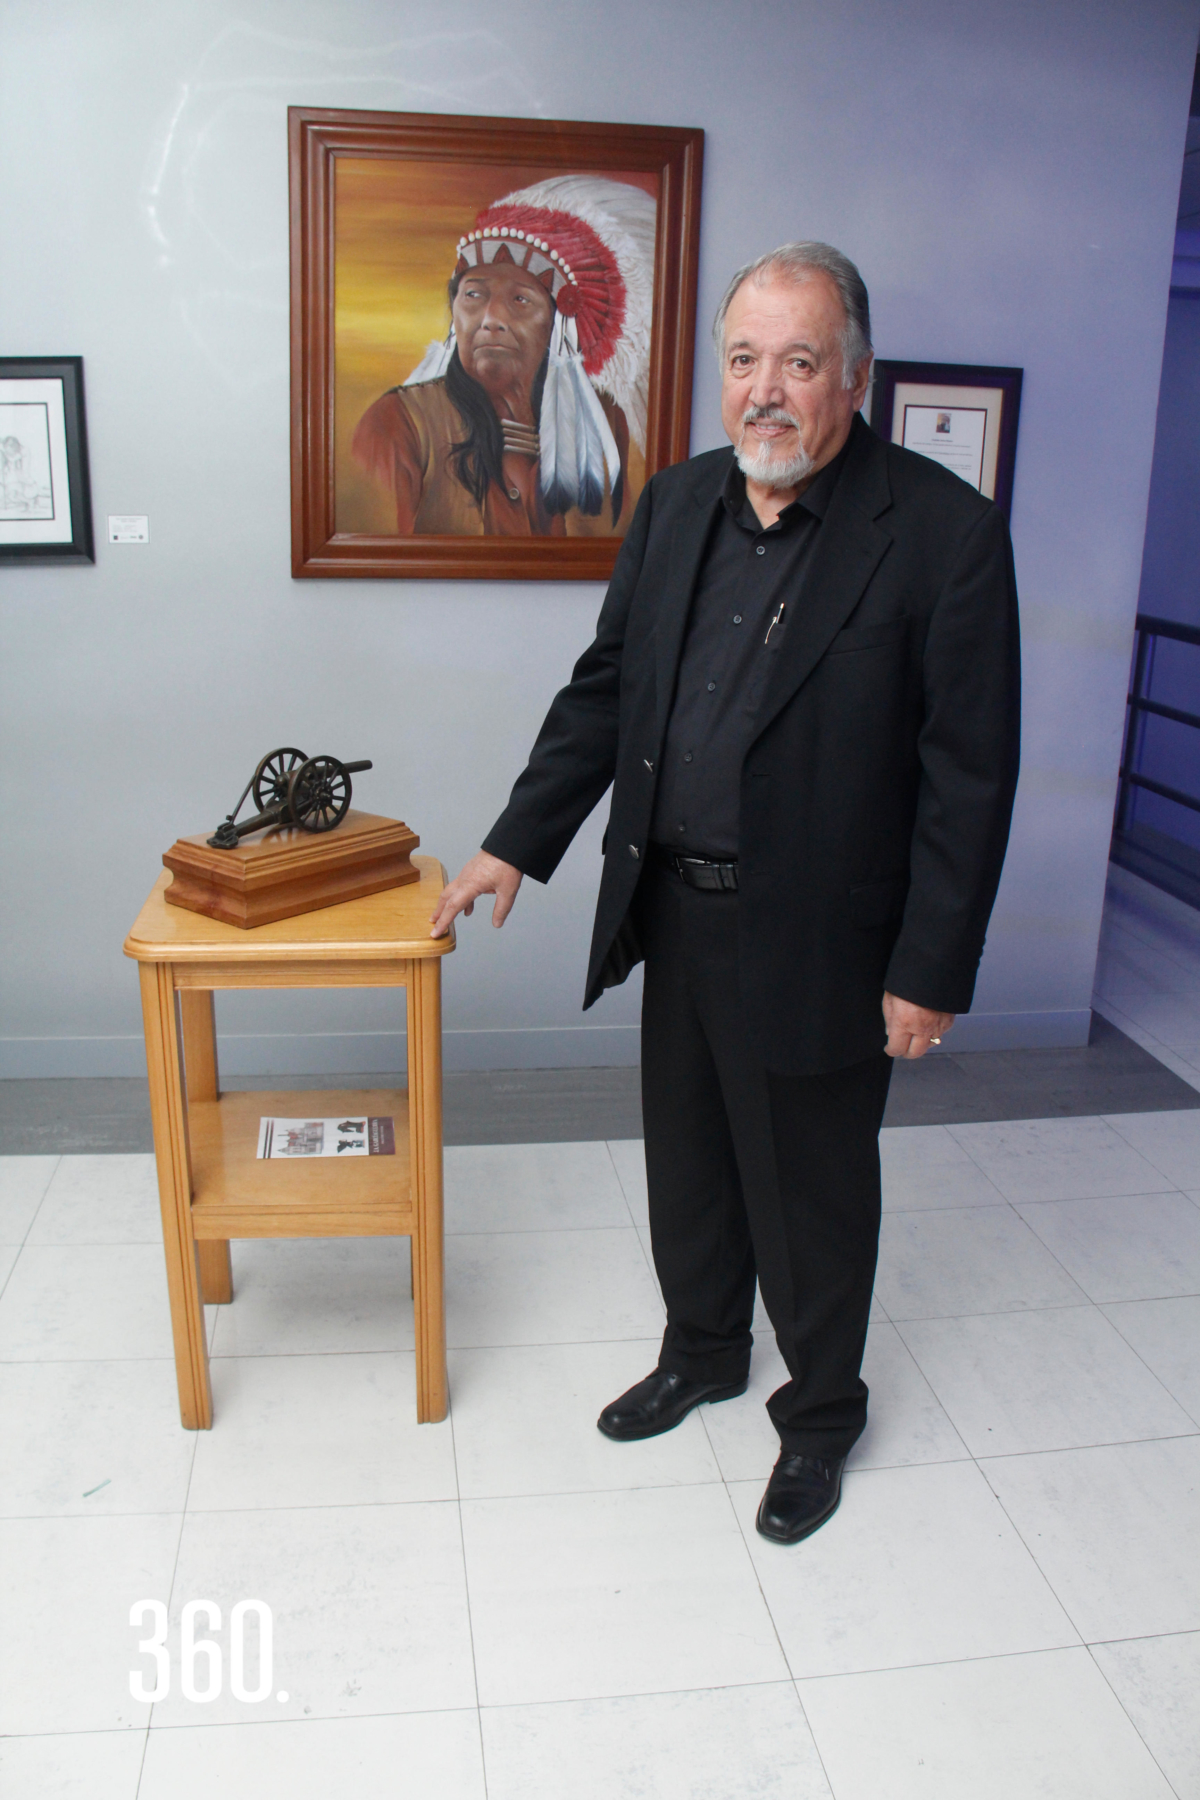 El artista José Antonio García Guerra realizo un Open House con sus obras de dibujos, pinturas y esculturas en la agencia Alfa Romero.